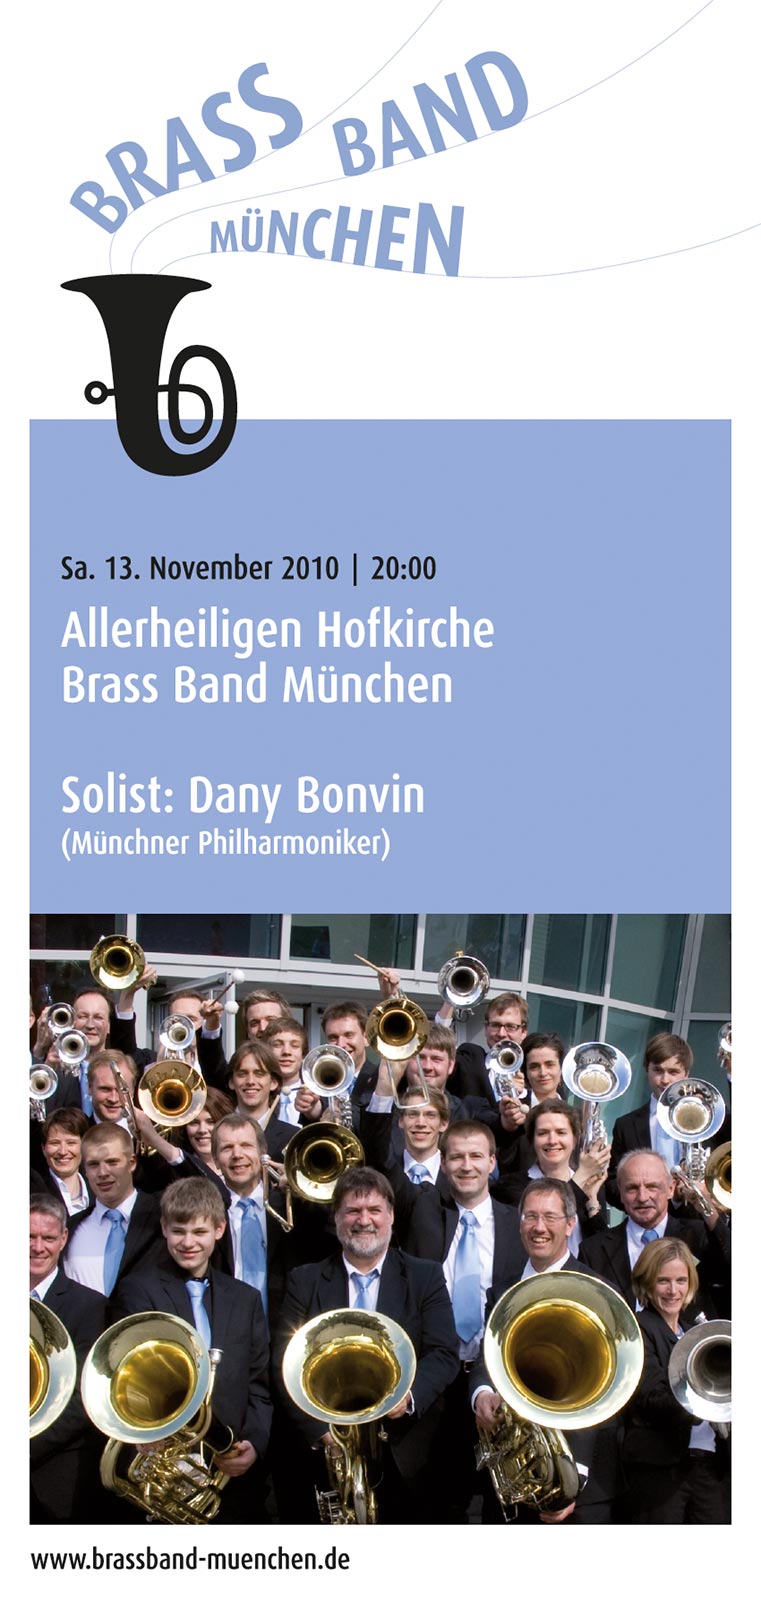 Brass Band München: Programmheft